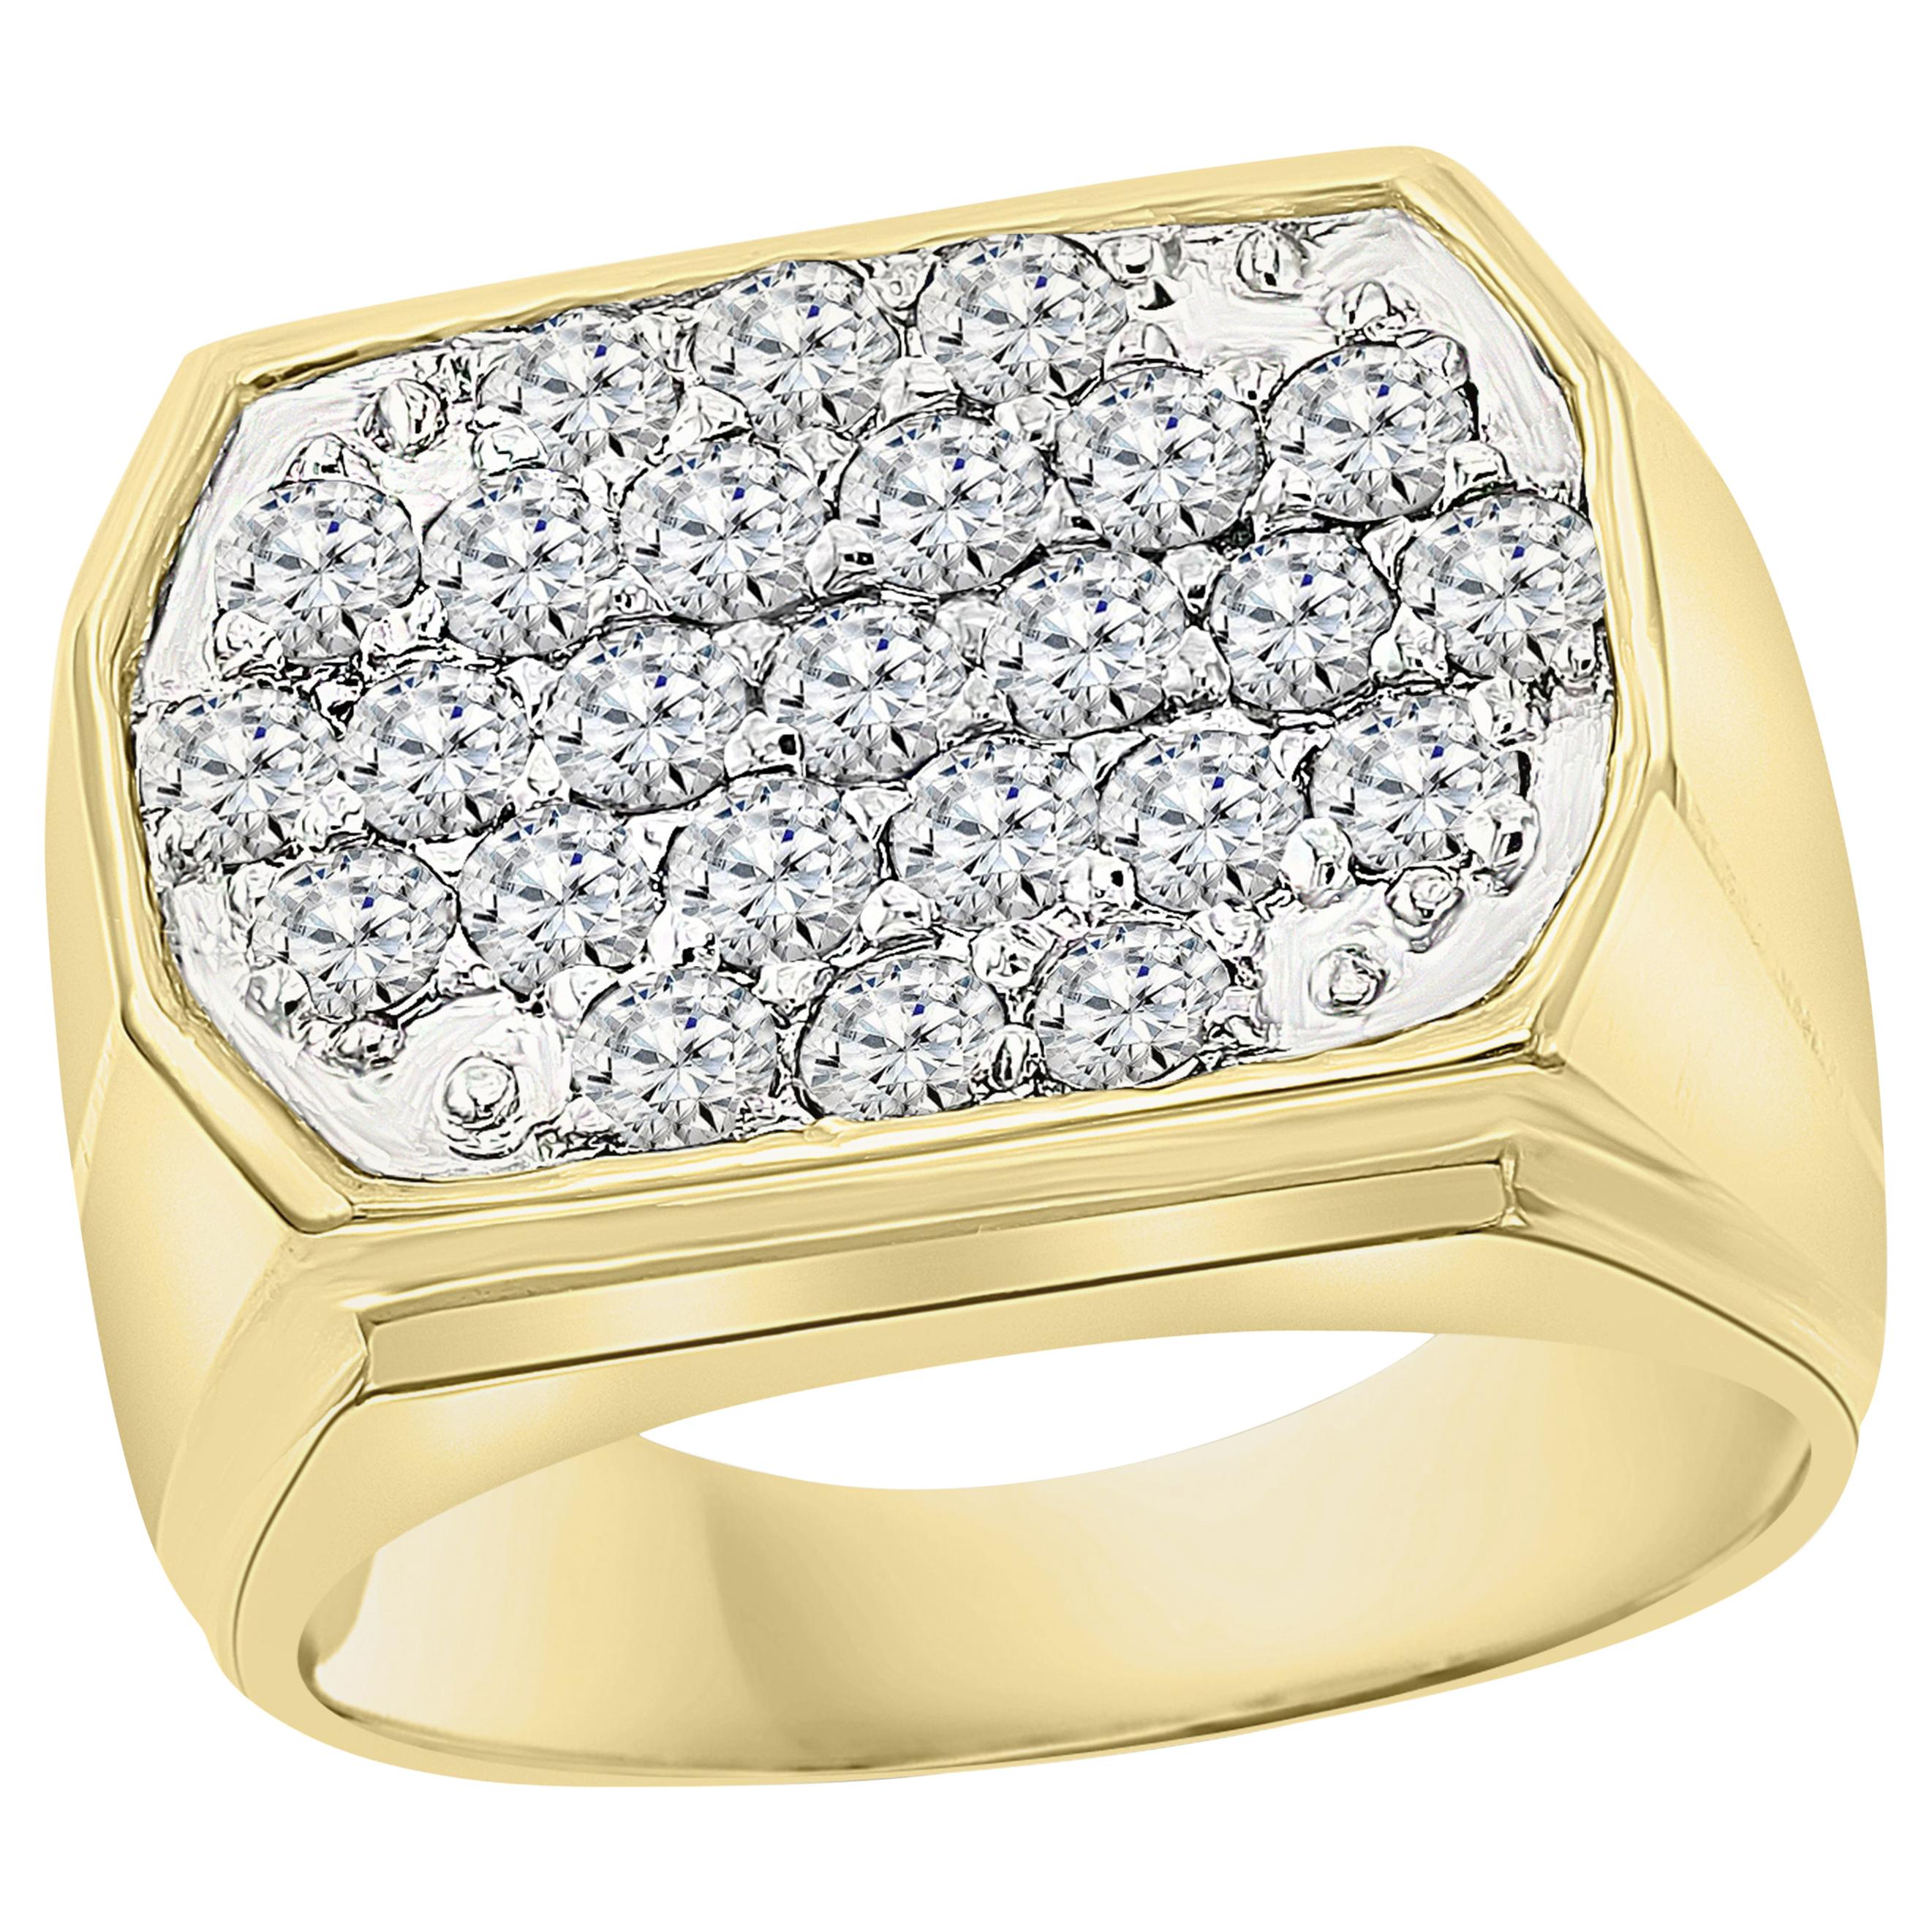 1.25 Carat Ice Diamond Traditional Men's Ring 14 Karat Yellow Gold Ring Estate